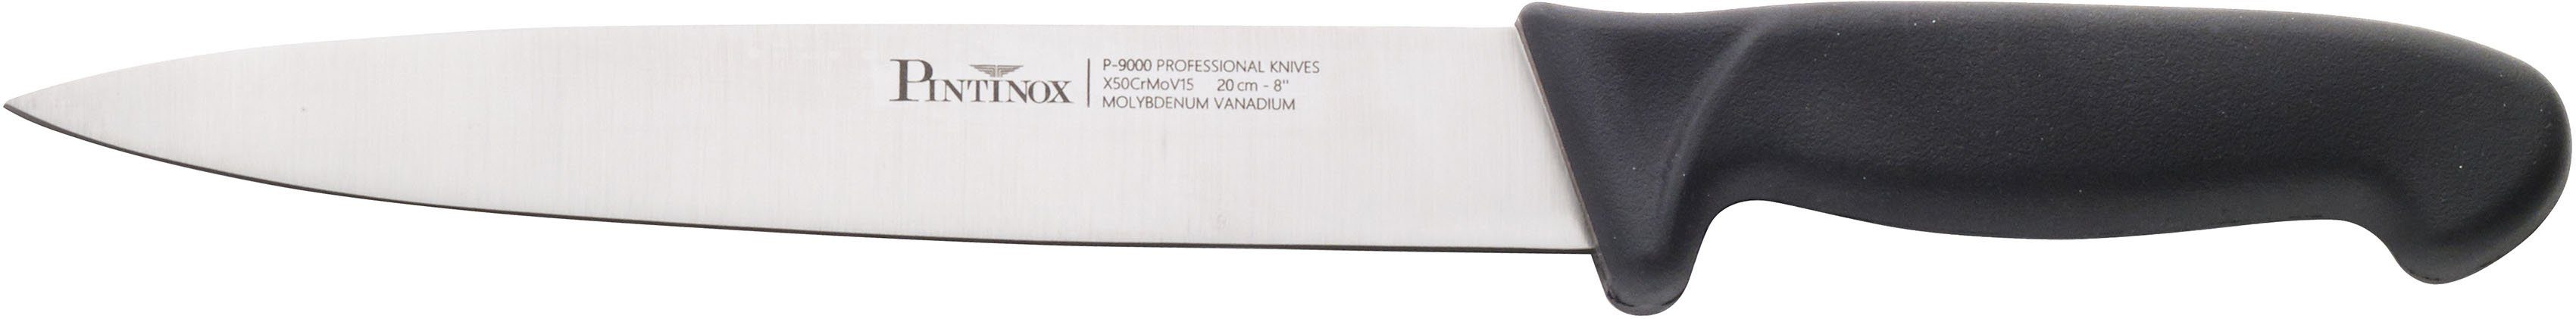 PINTINOX Allzweckmesser Coltelli P9000, 20 Edelstahl cm rutschfestem mit Klingenlänge Kunststoff